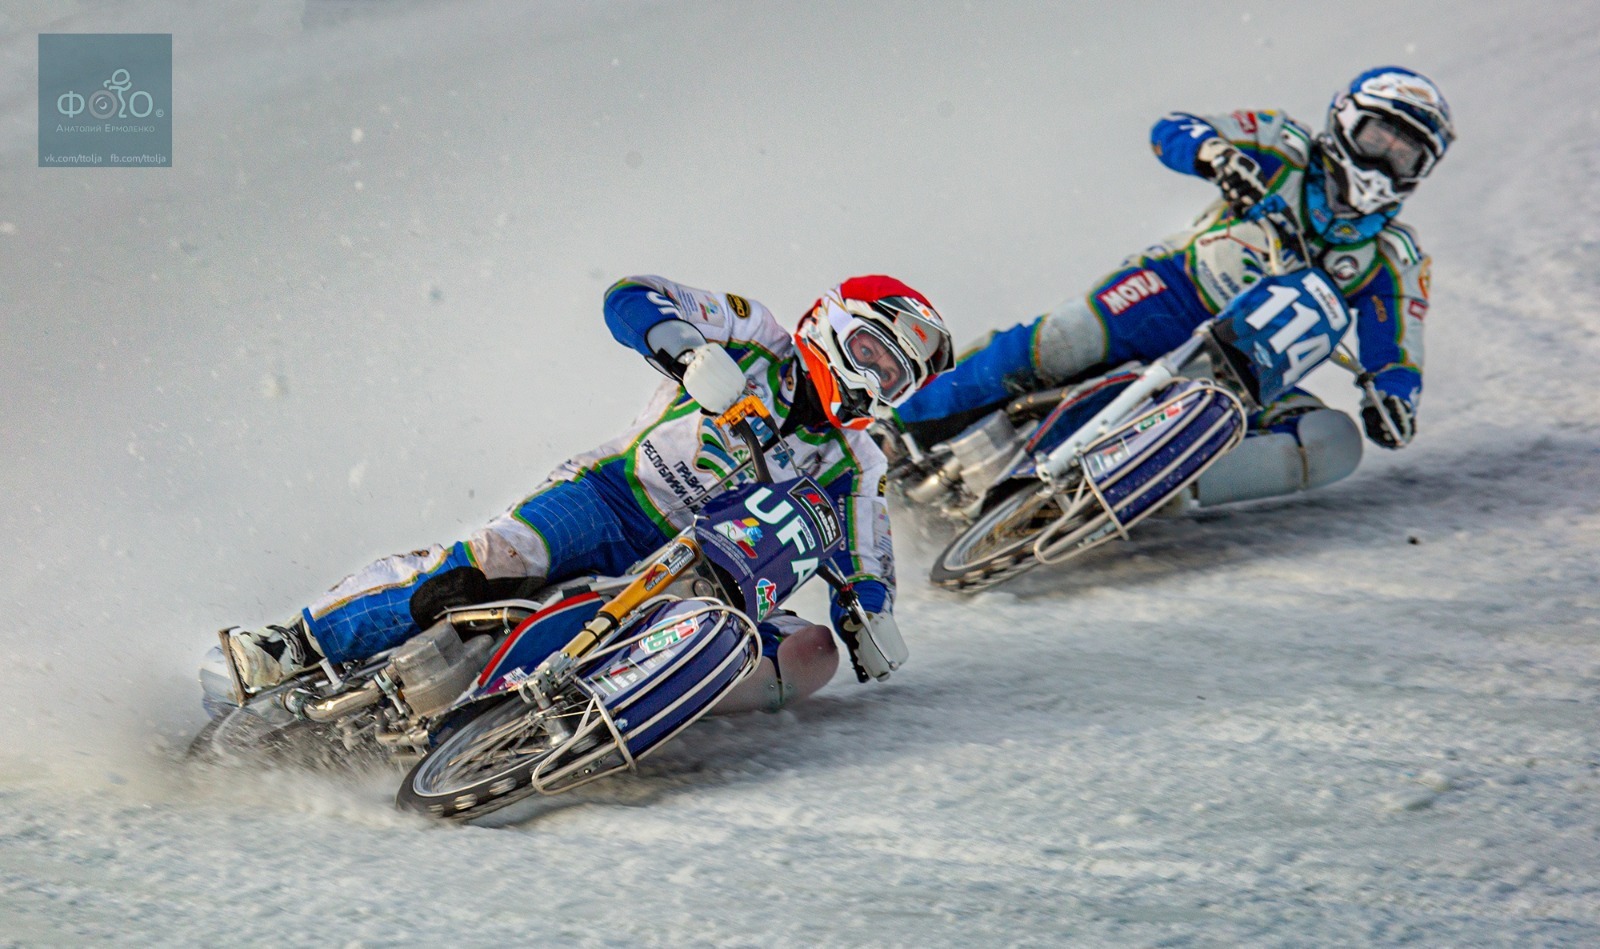 Победный дубль гонщиков Башкортостана на третьем финале чемпионата России по мотогонкам на льду